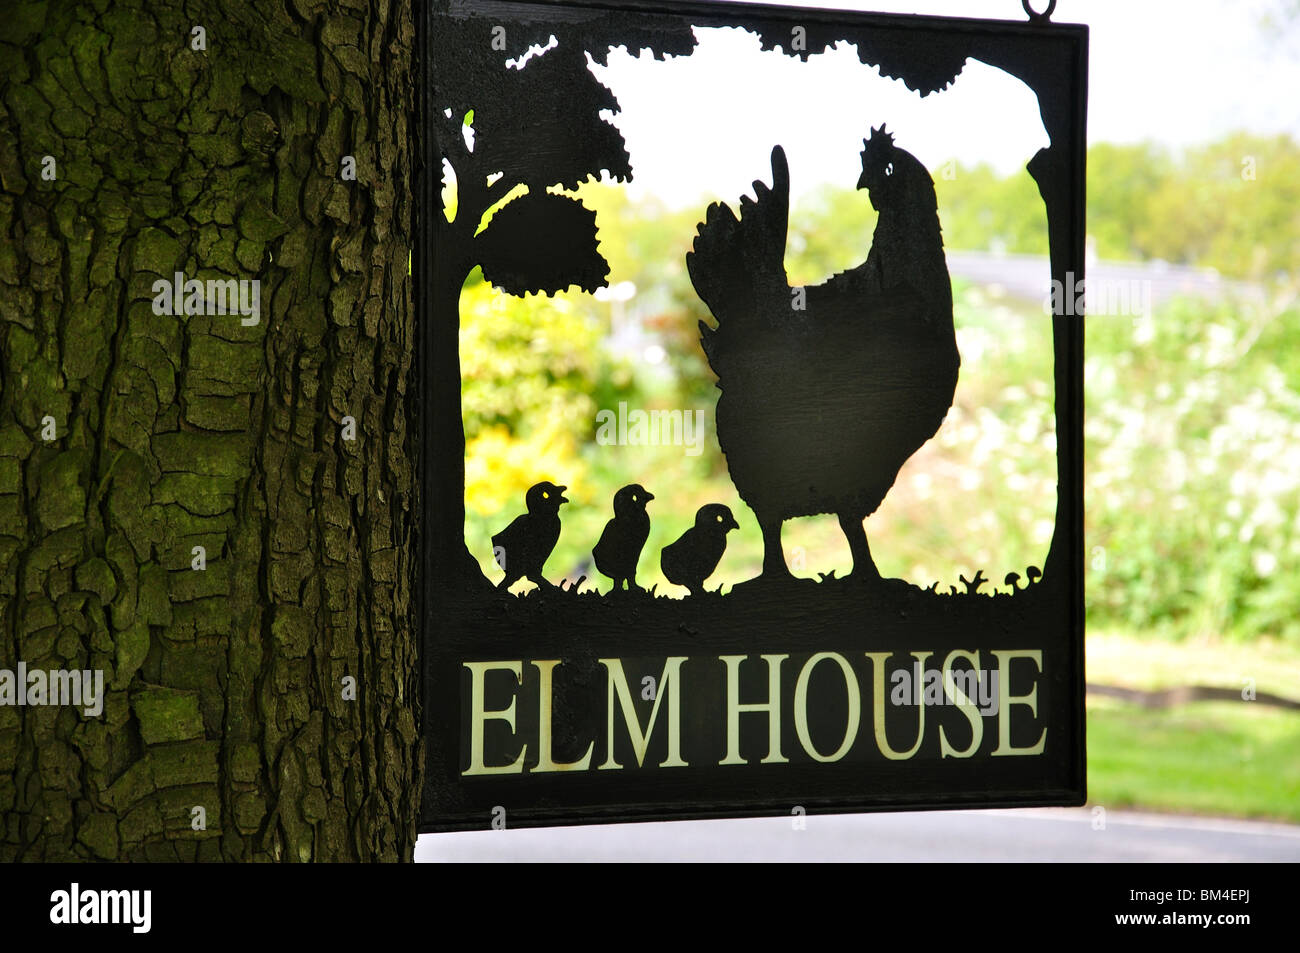 Elm House sign, près de Canterbury, Kent, England, United Kingdom Banque D'Images